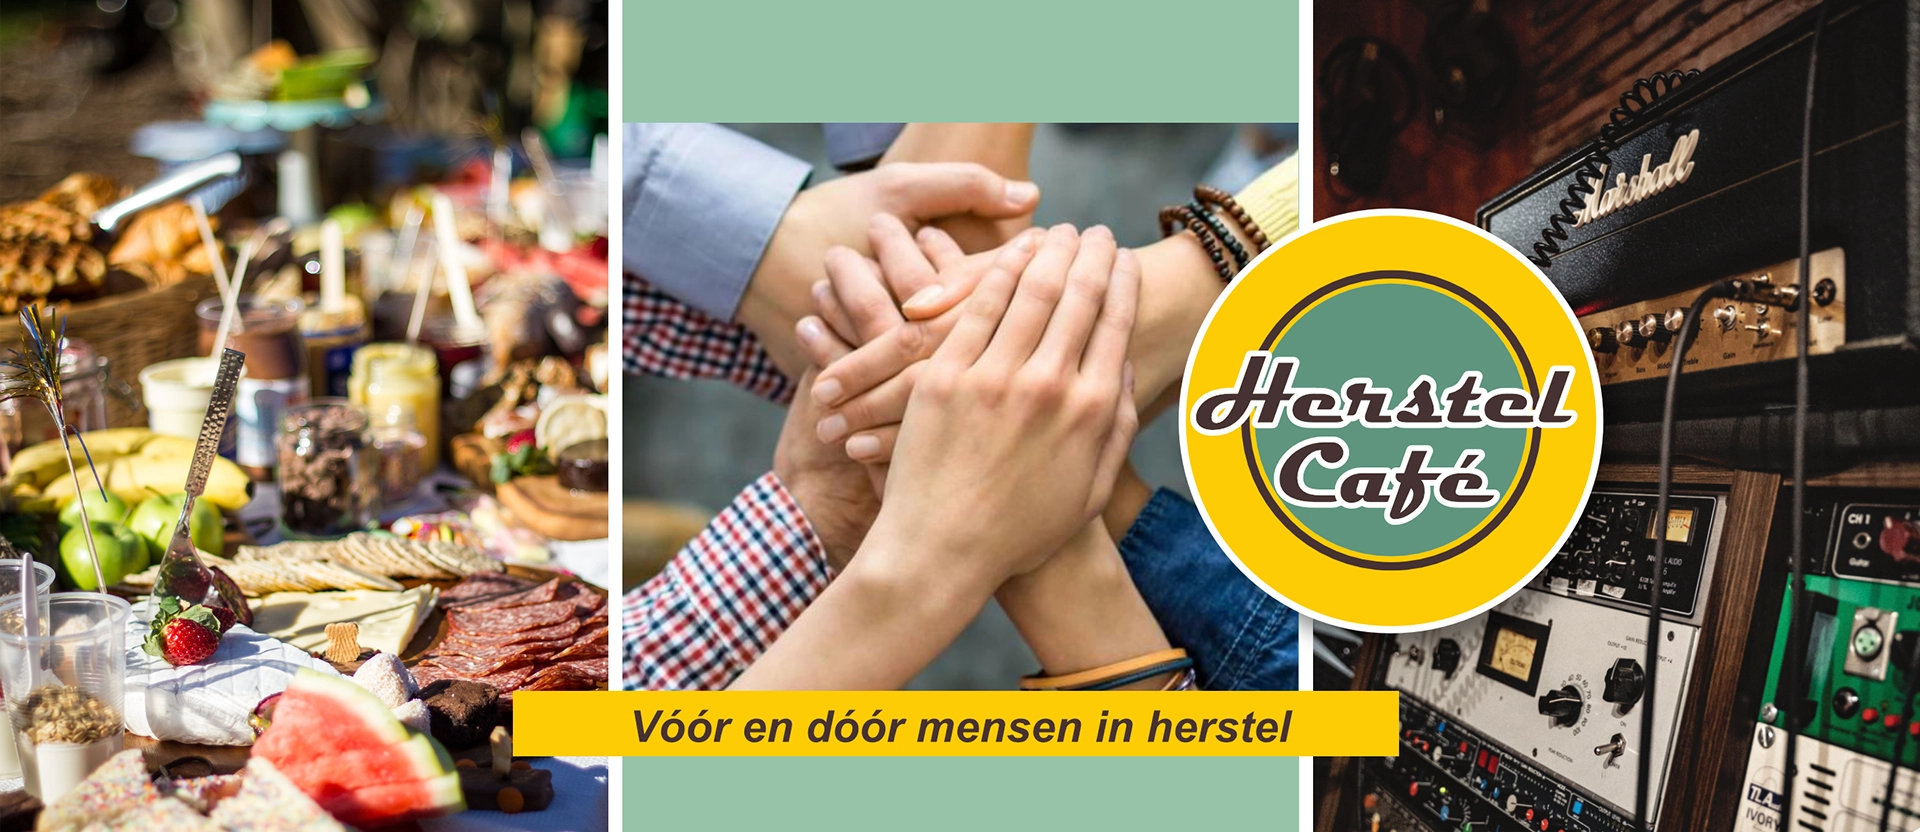 Herstel Café Zutphen - Stichting Waterkwartier